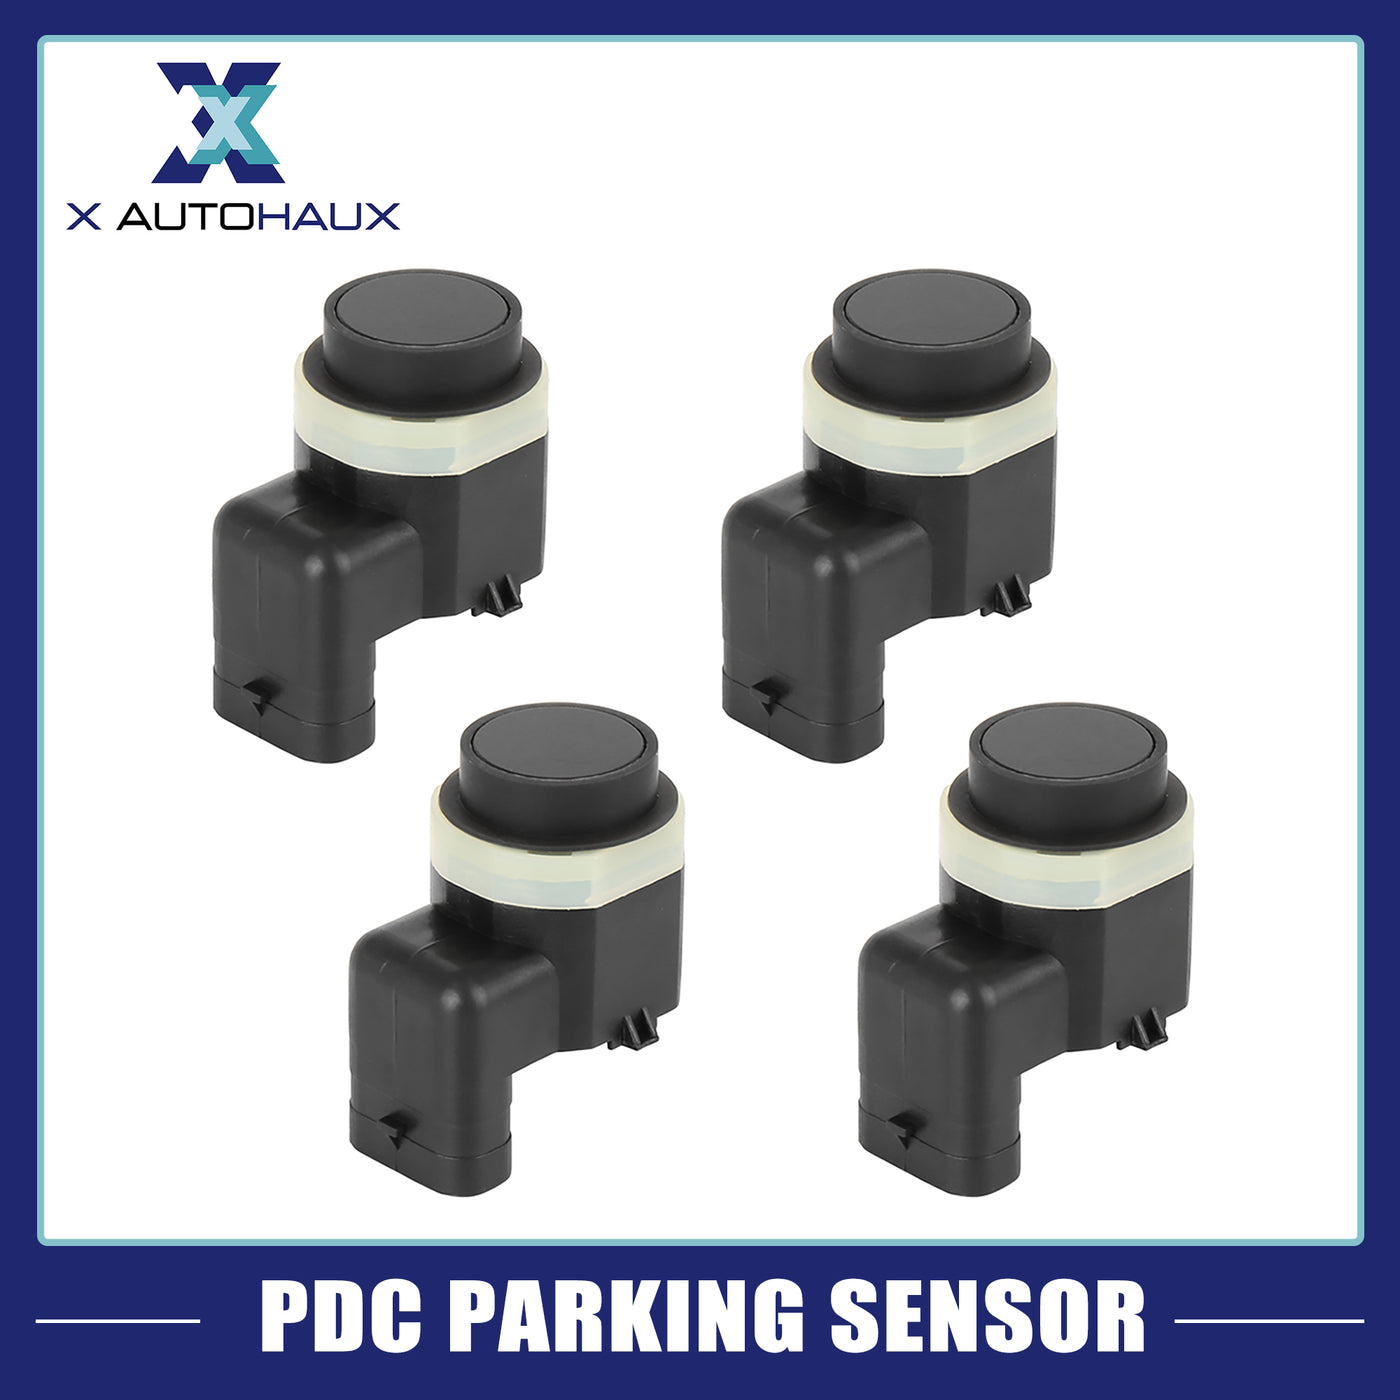 X AUTOHAUX 4pcs 66209142217 Car Bumper PDC Reverse Parking Assist Sensor for BMW X5 X6 E71 E70 E72